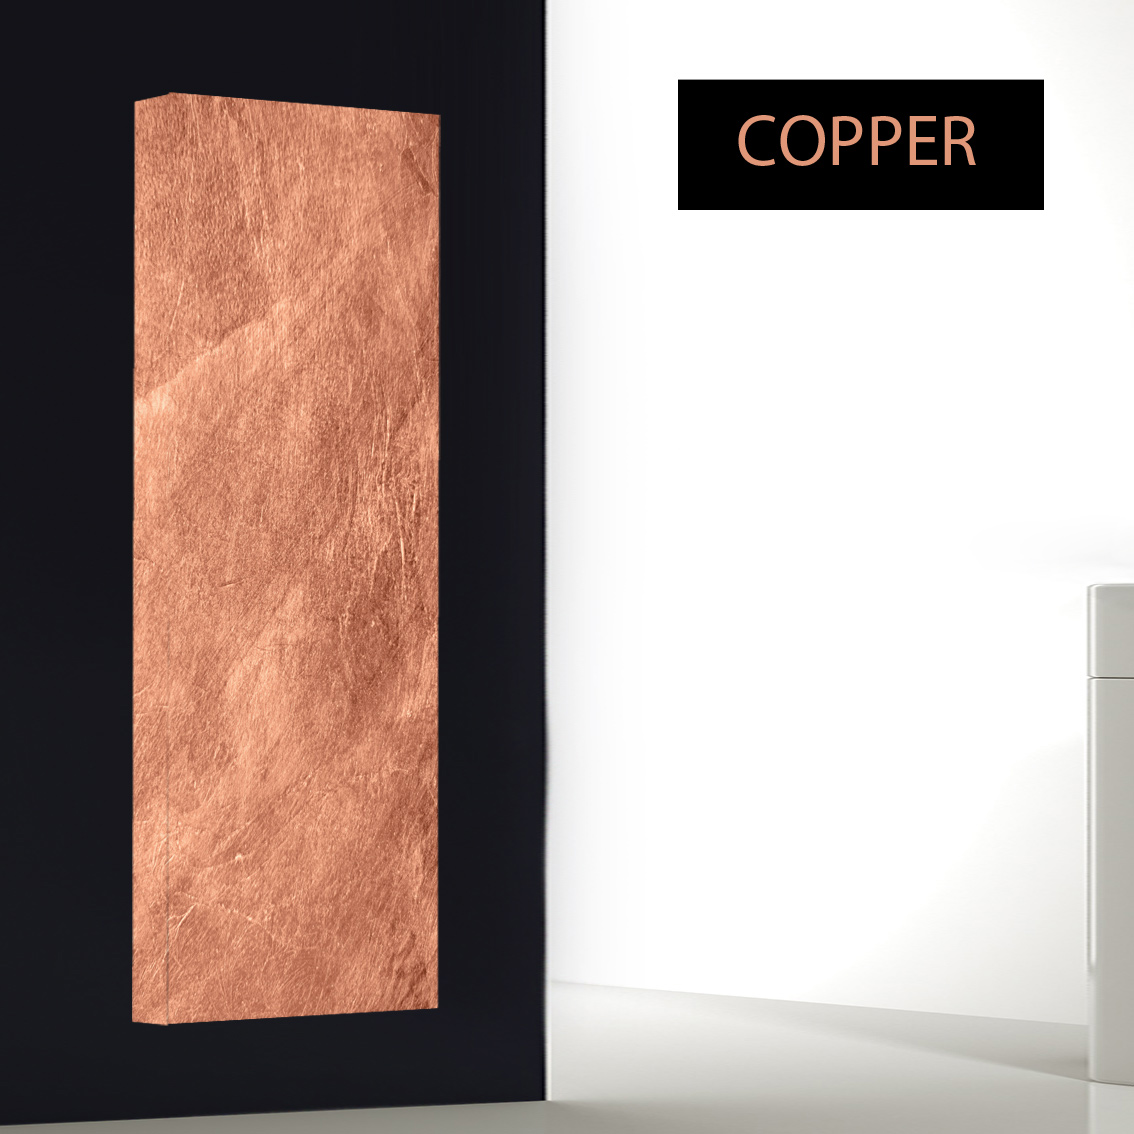 Copper Design Heizkörper Wohnzimmer, Wohnraum Schönste Design Heizkörper für Bad, Wohnzimmer und Küche.